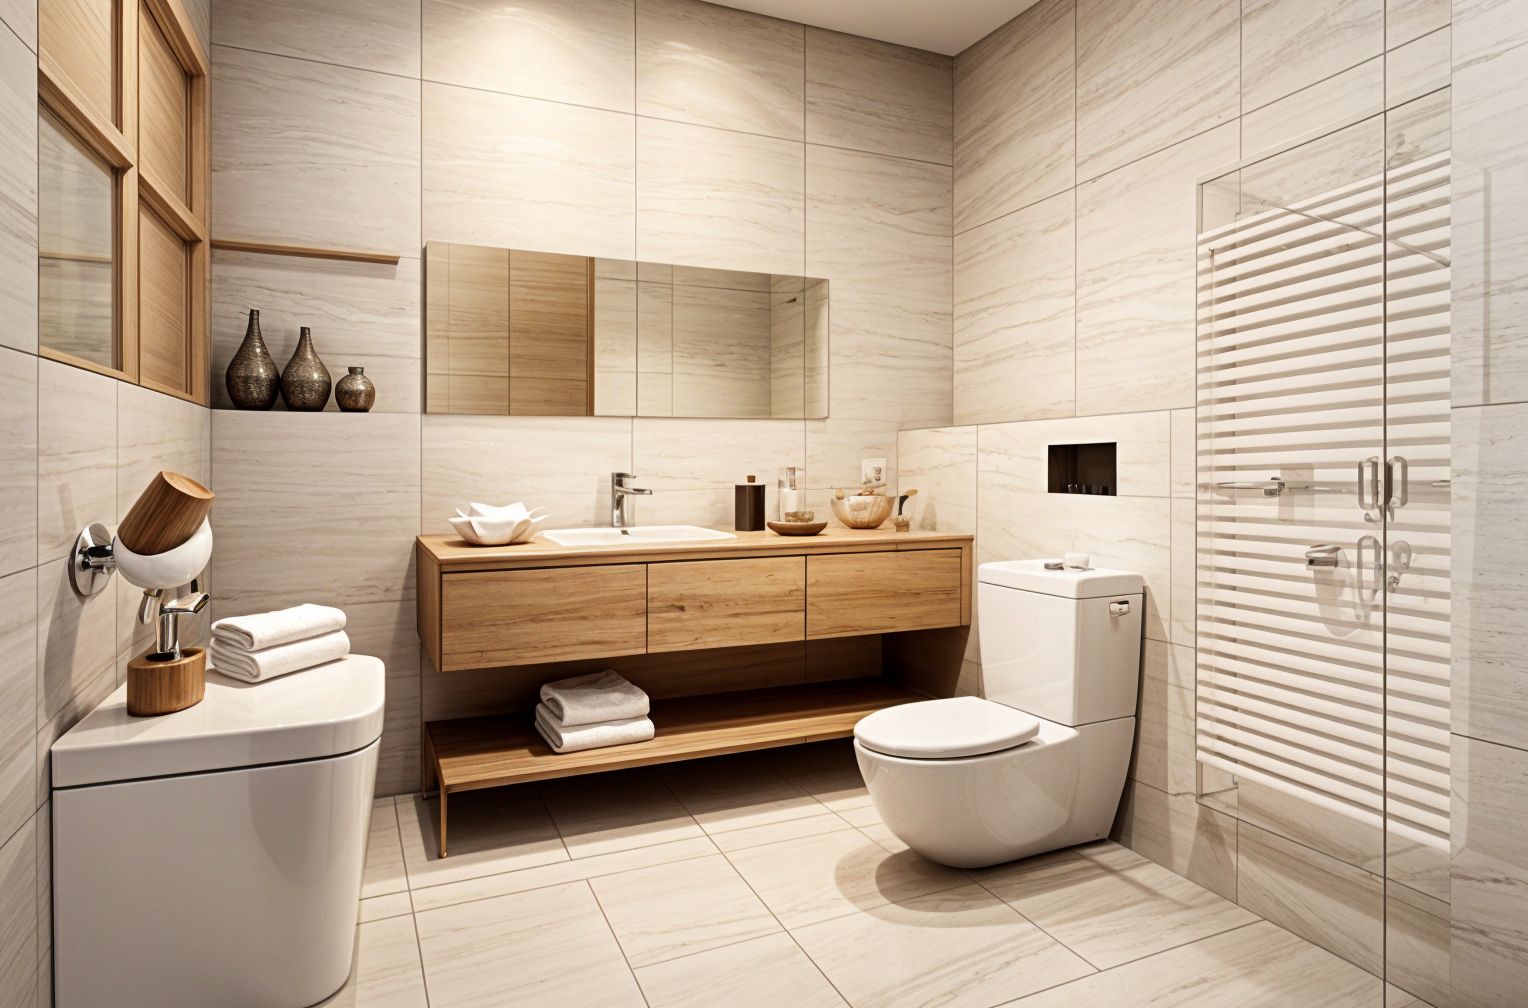 Japanese Design Toilet